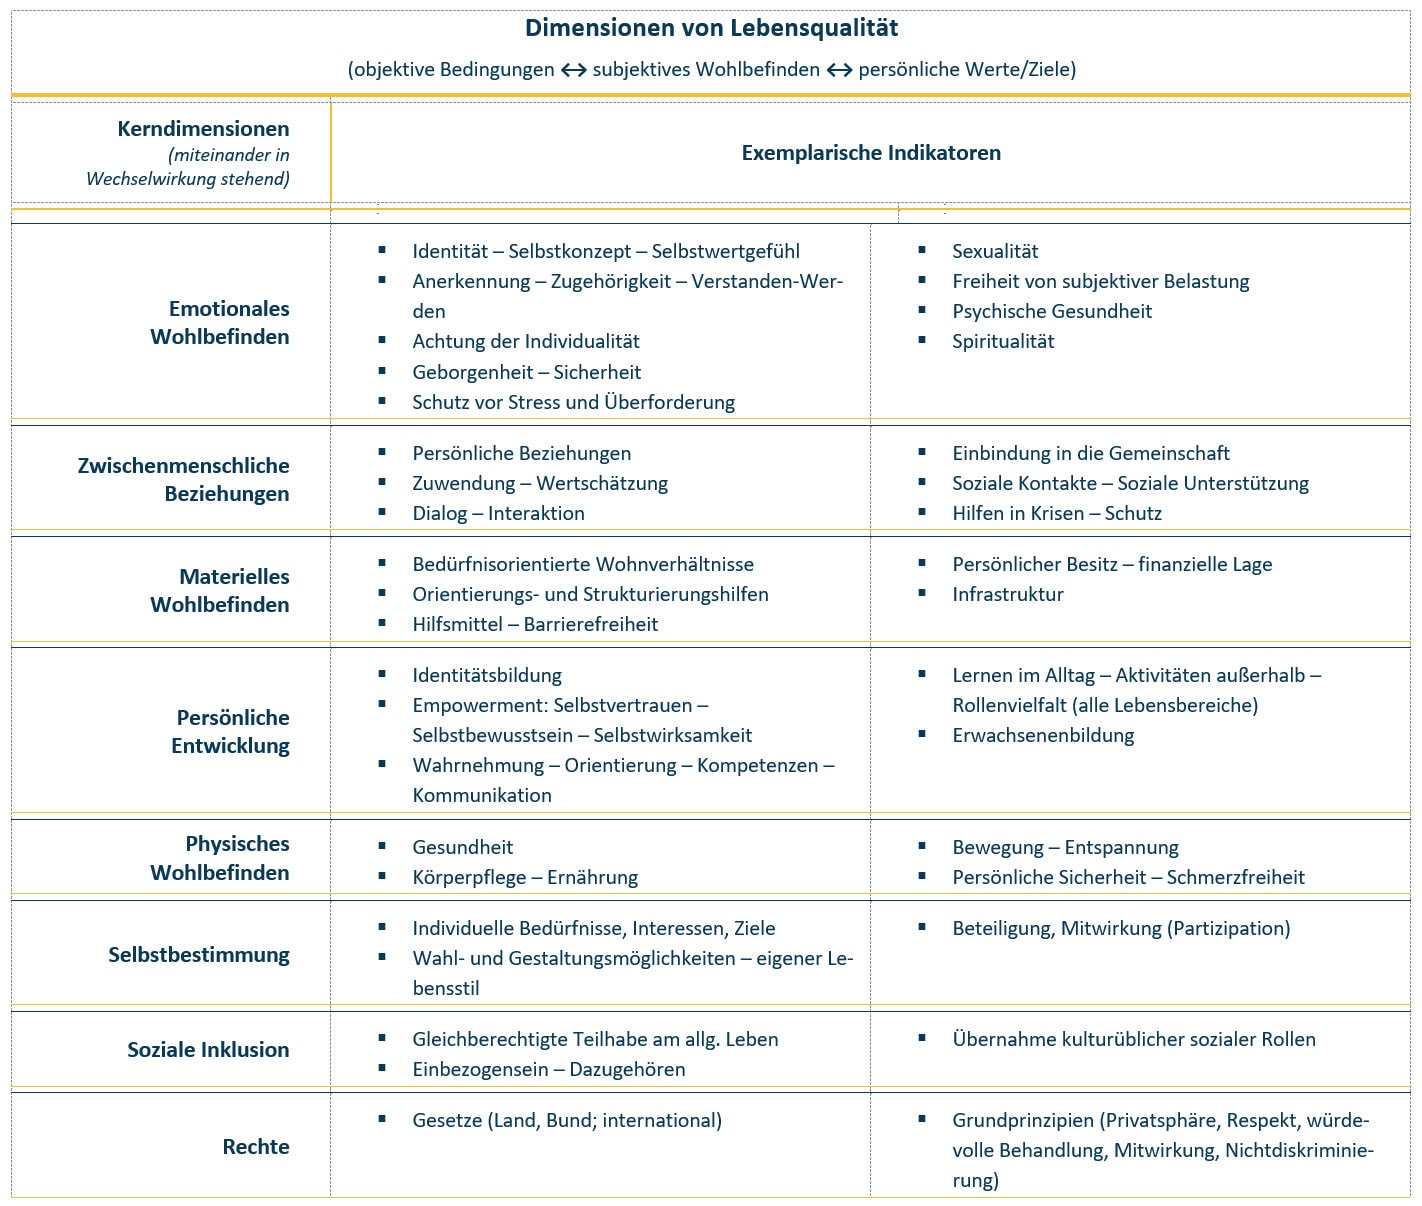 Tabelle mit den Dimensionen und Kategorien der Lebensqualität, einschließlich objektiver Bedingungen, persönlicher Ziele und subjektivem Wohlbefinden mit deutschen Beschreibungen für jede Kategorie.